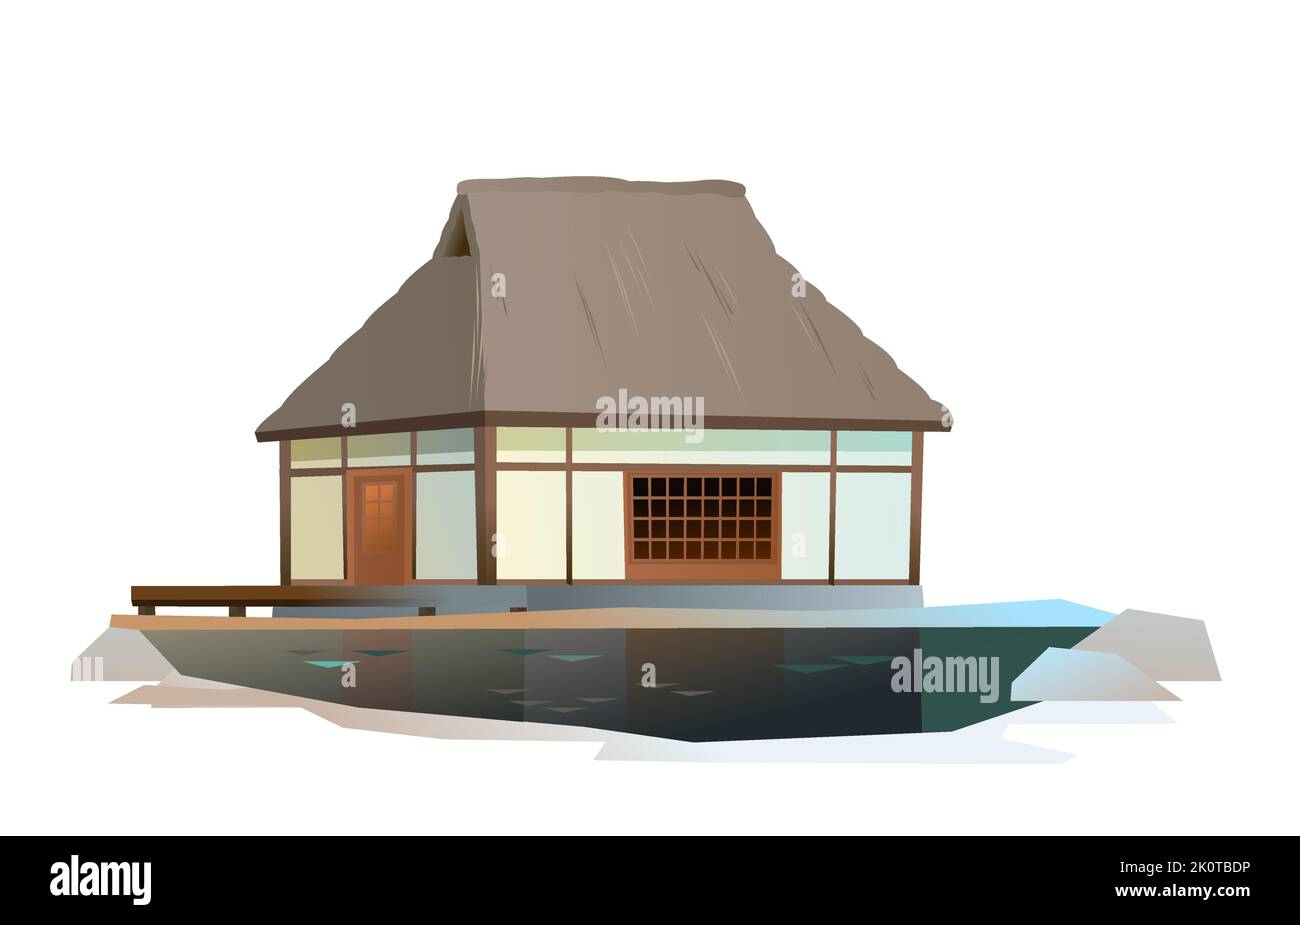 Maison japonaise traditionnelle. Sur la rive de l'étang. Habitation rurale avec toit de chaume. Illustration vecteur. Illustration de Vecteur